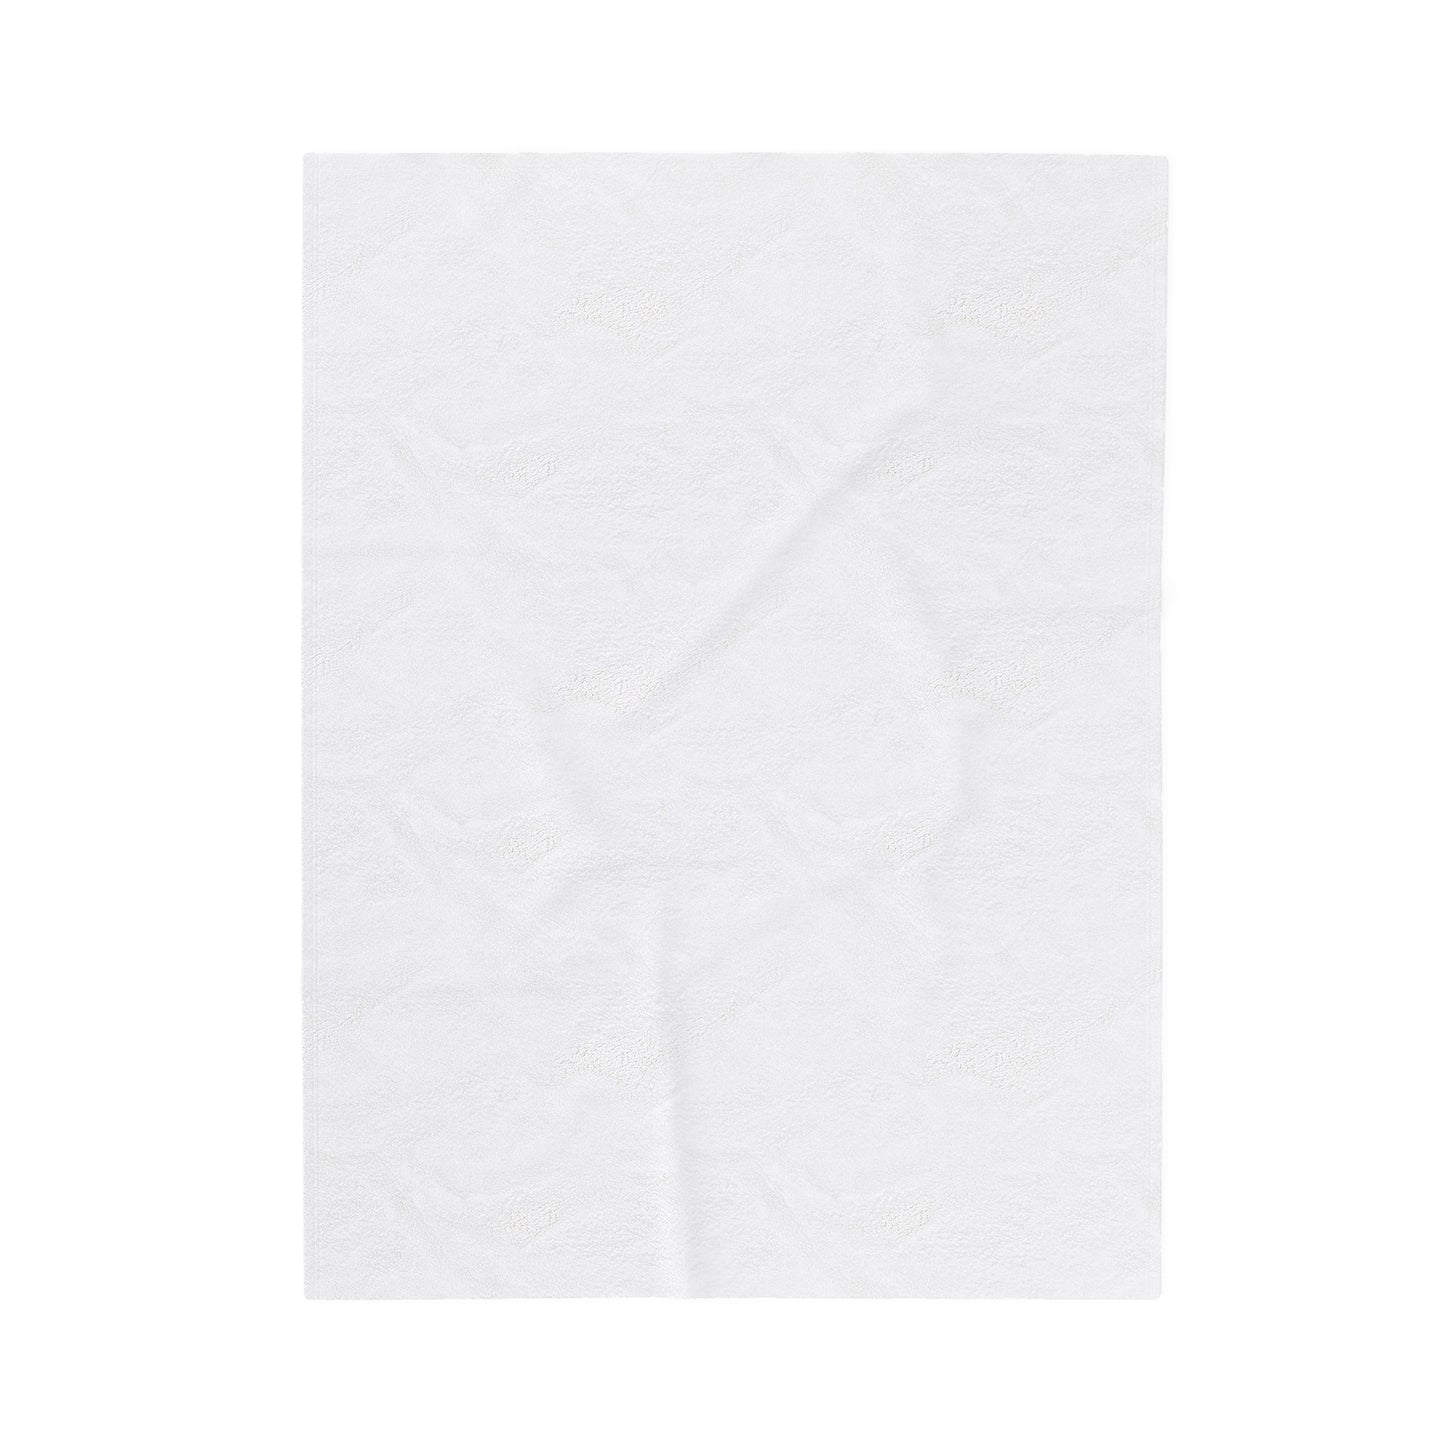 ABSTRACT SHAPES 102.1 - Velveteen Plush Blanket